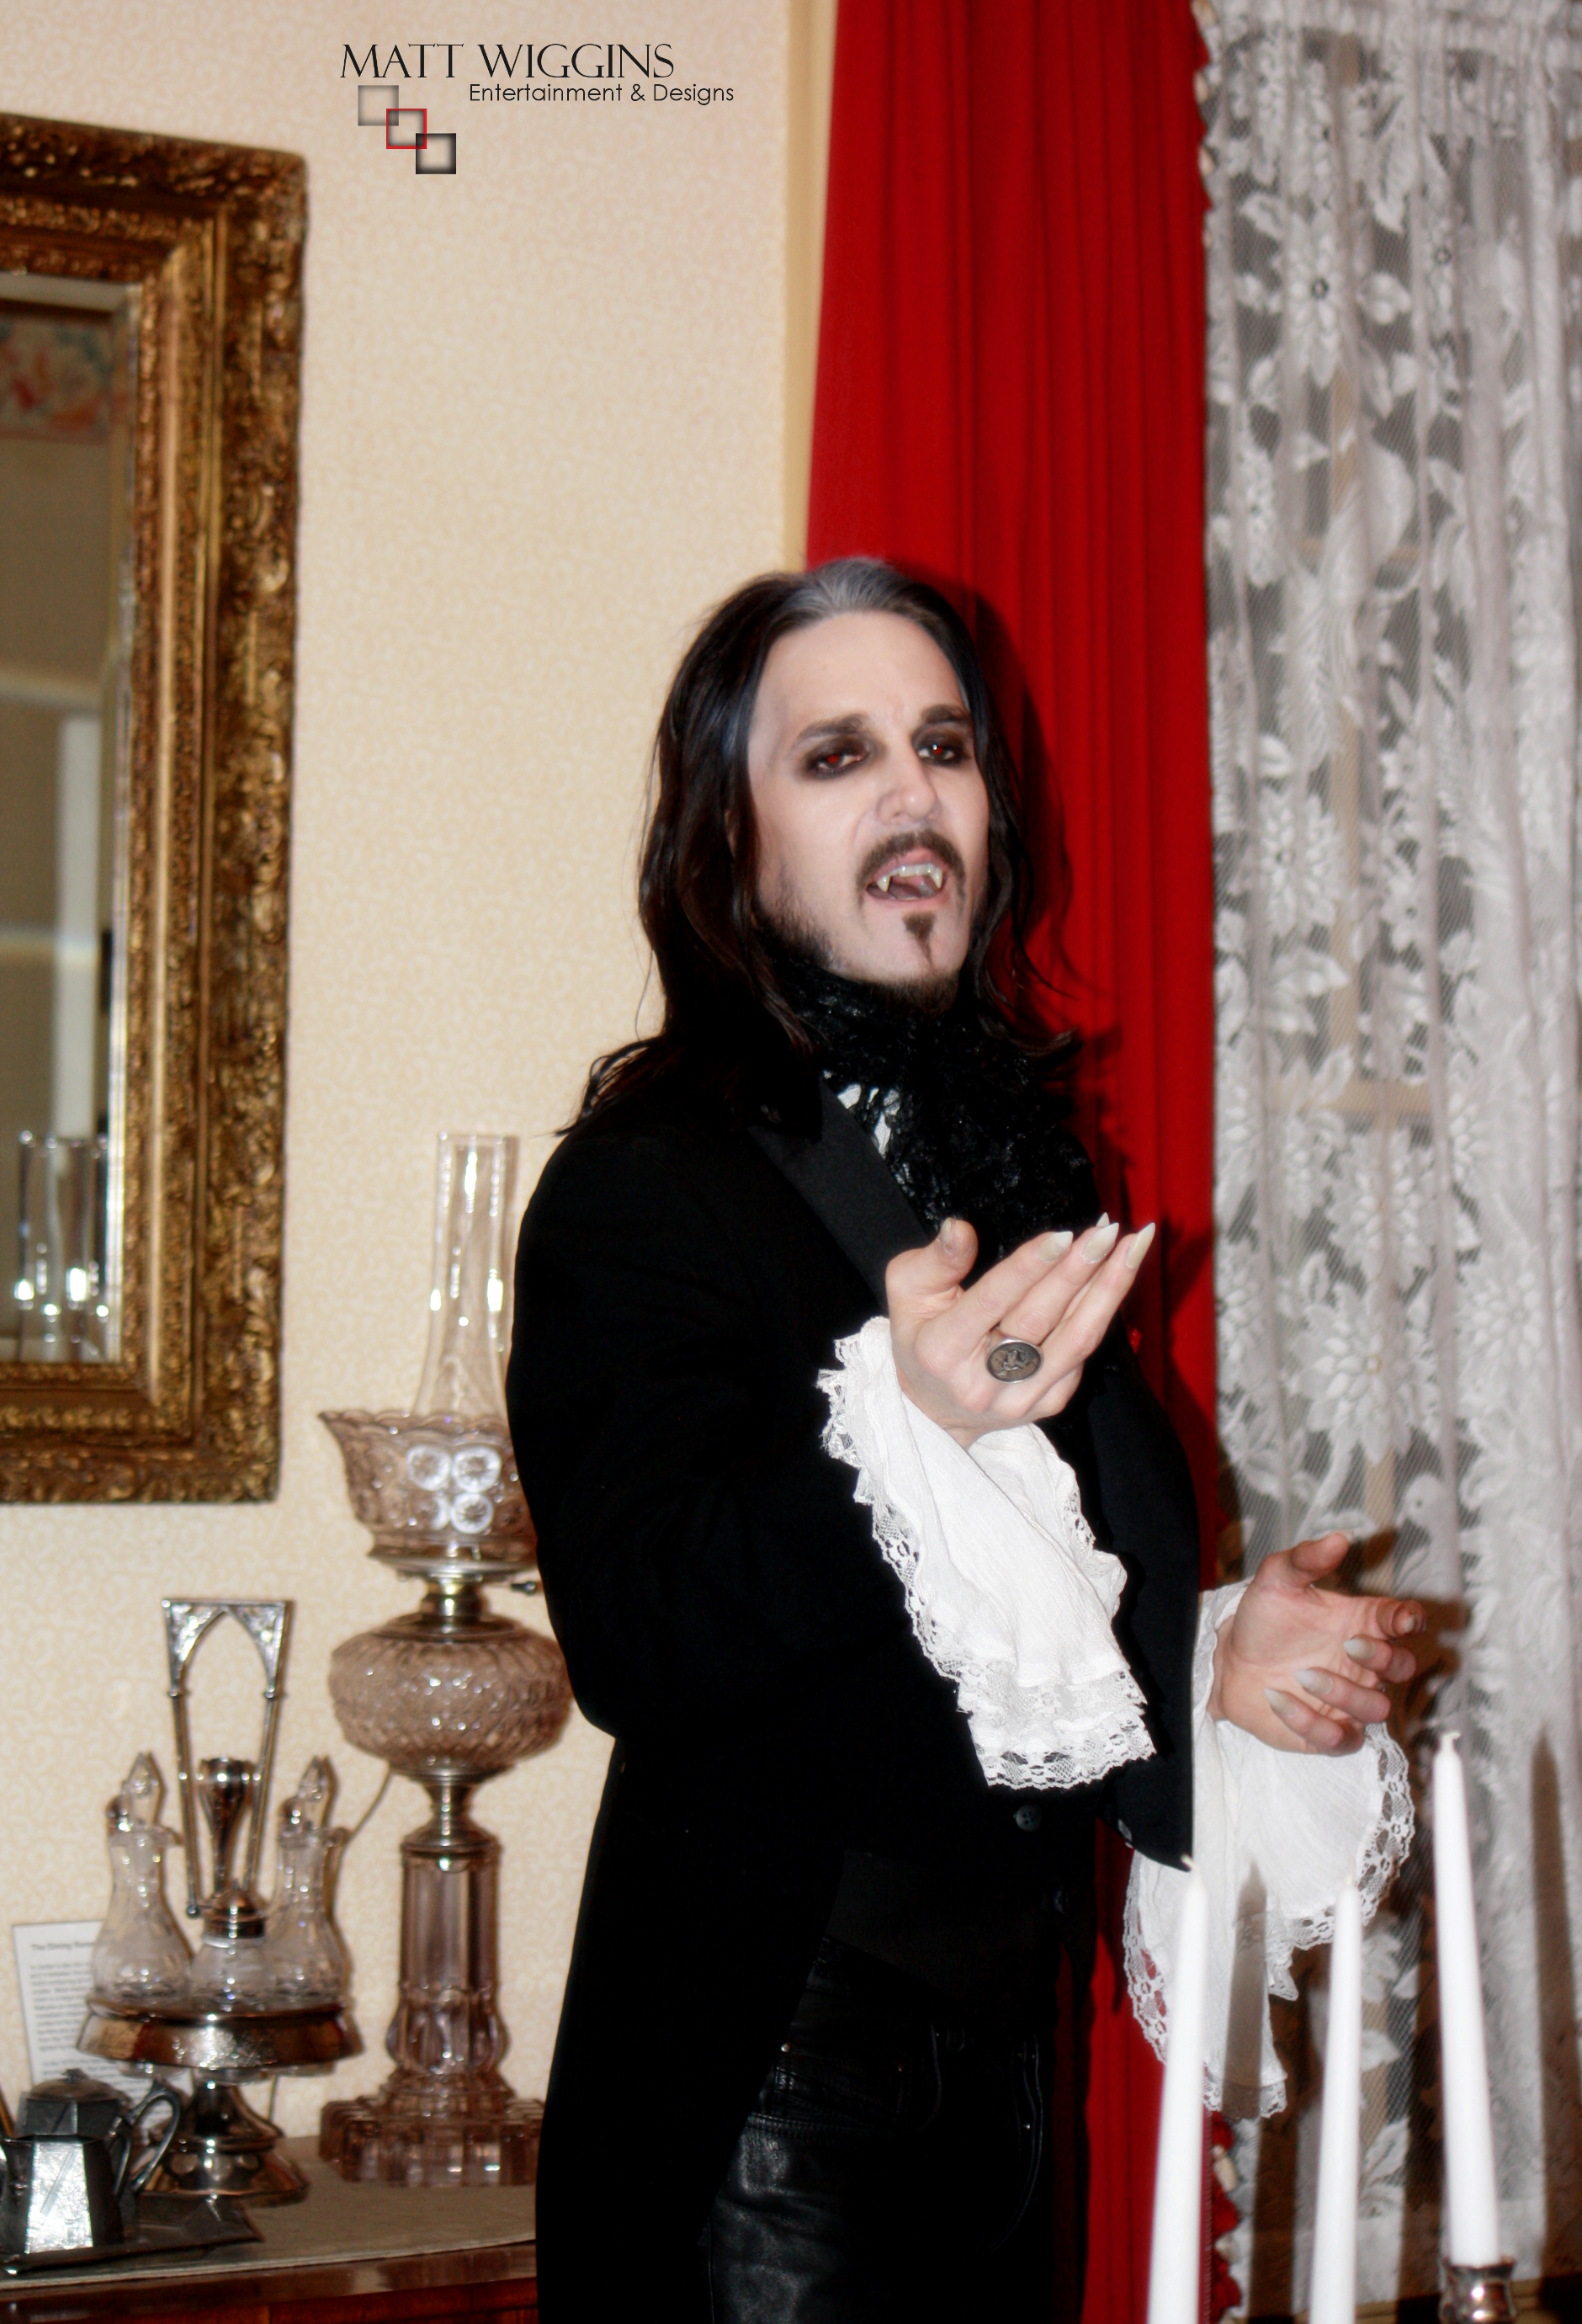 Matt Wiggins as Bram Stokers Dracula, October 2013.